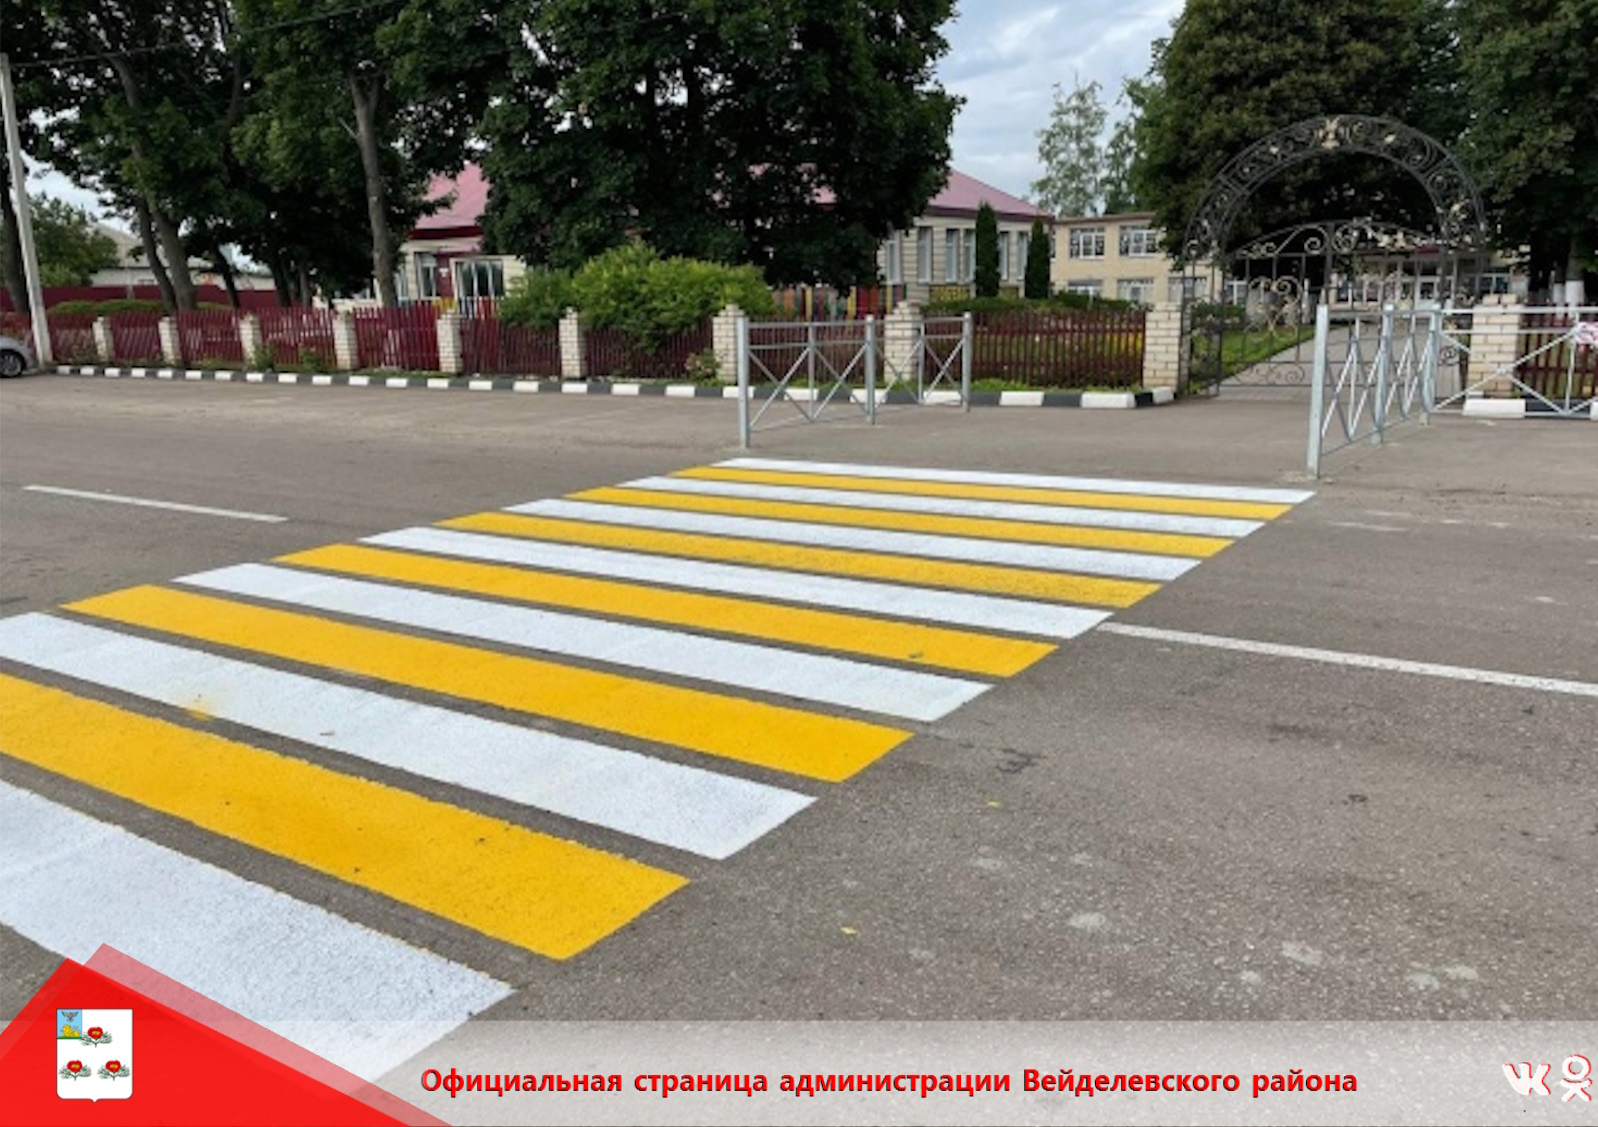 Предлагаем пройти опрос о состоянии пешеходных переходов в муниципалитетах Белгородской области.